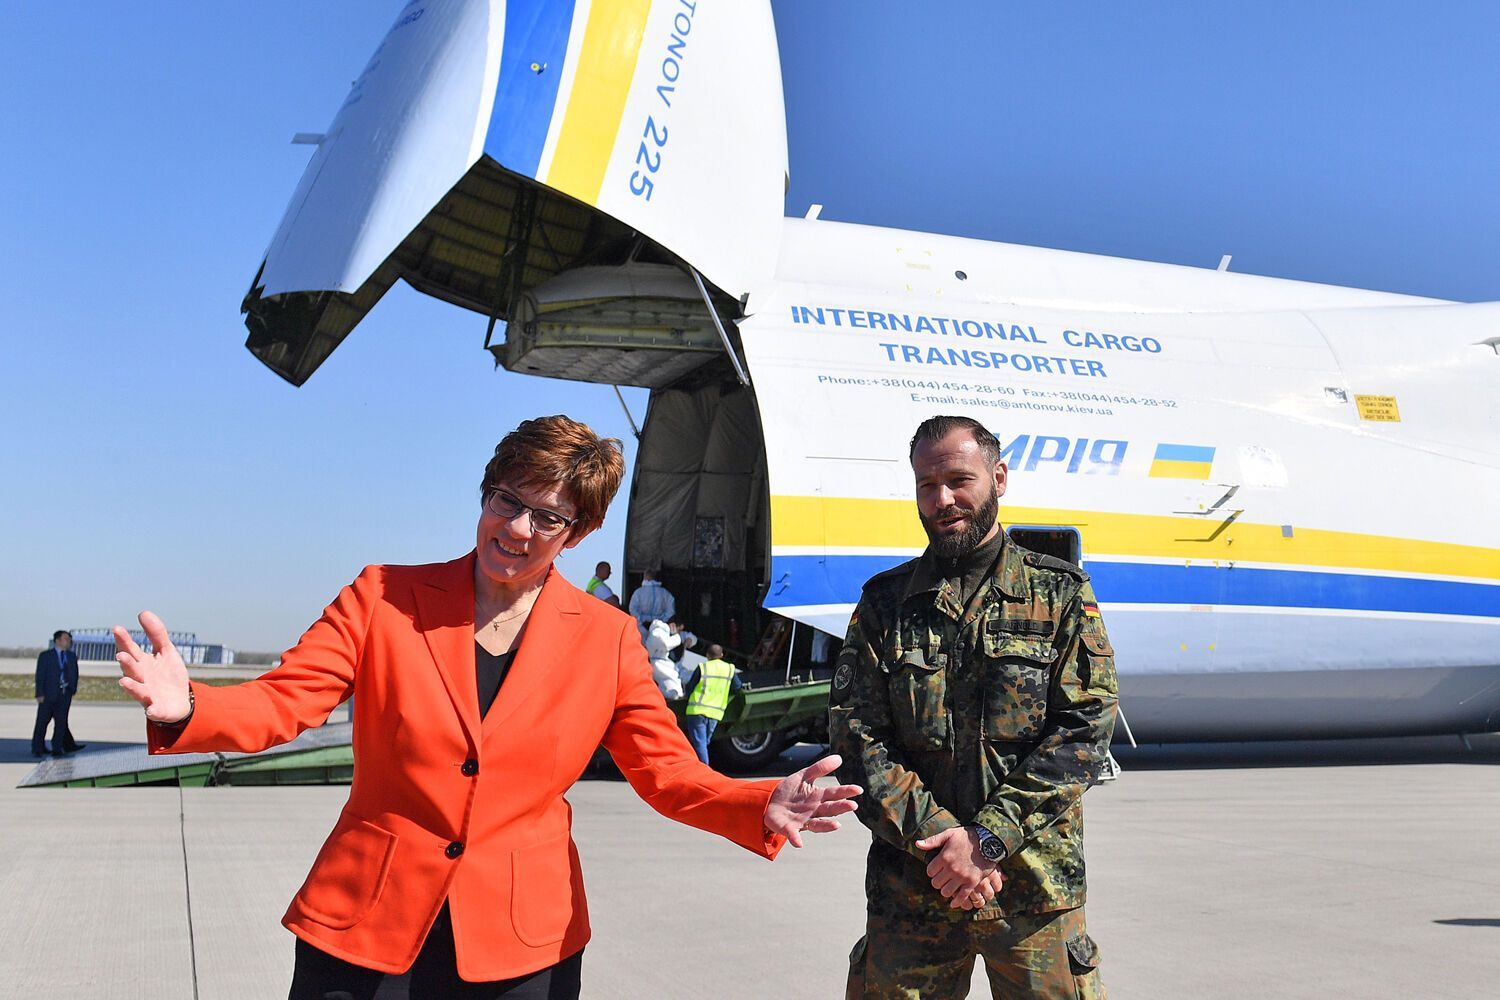 Минимум 27 операций: в каких миротворческих и спасательных миссиях принимала участие Украина

